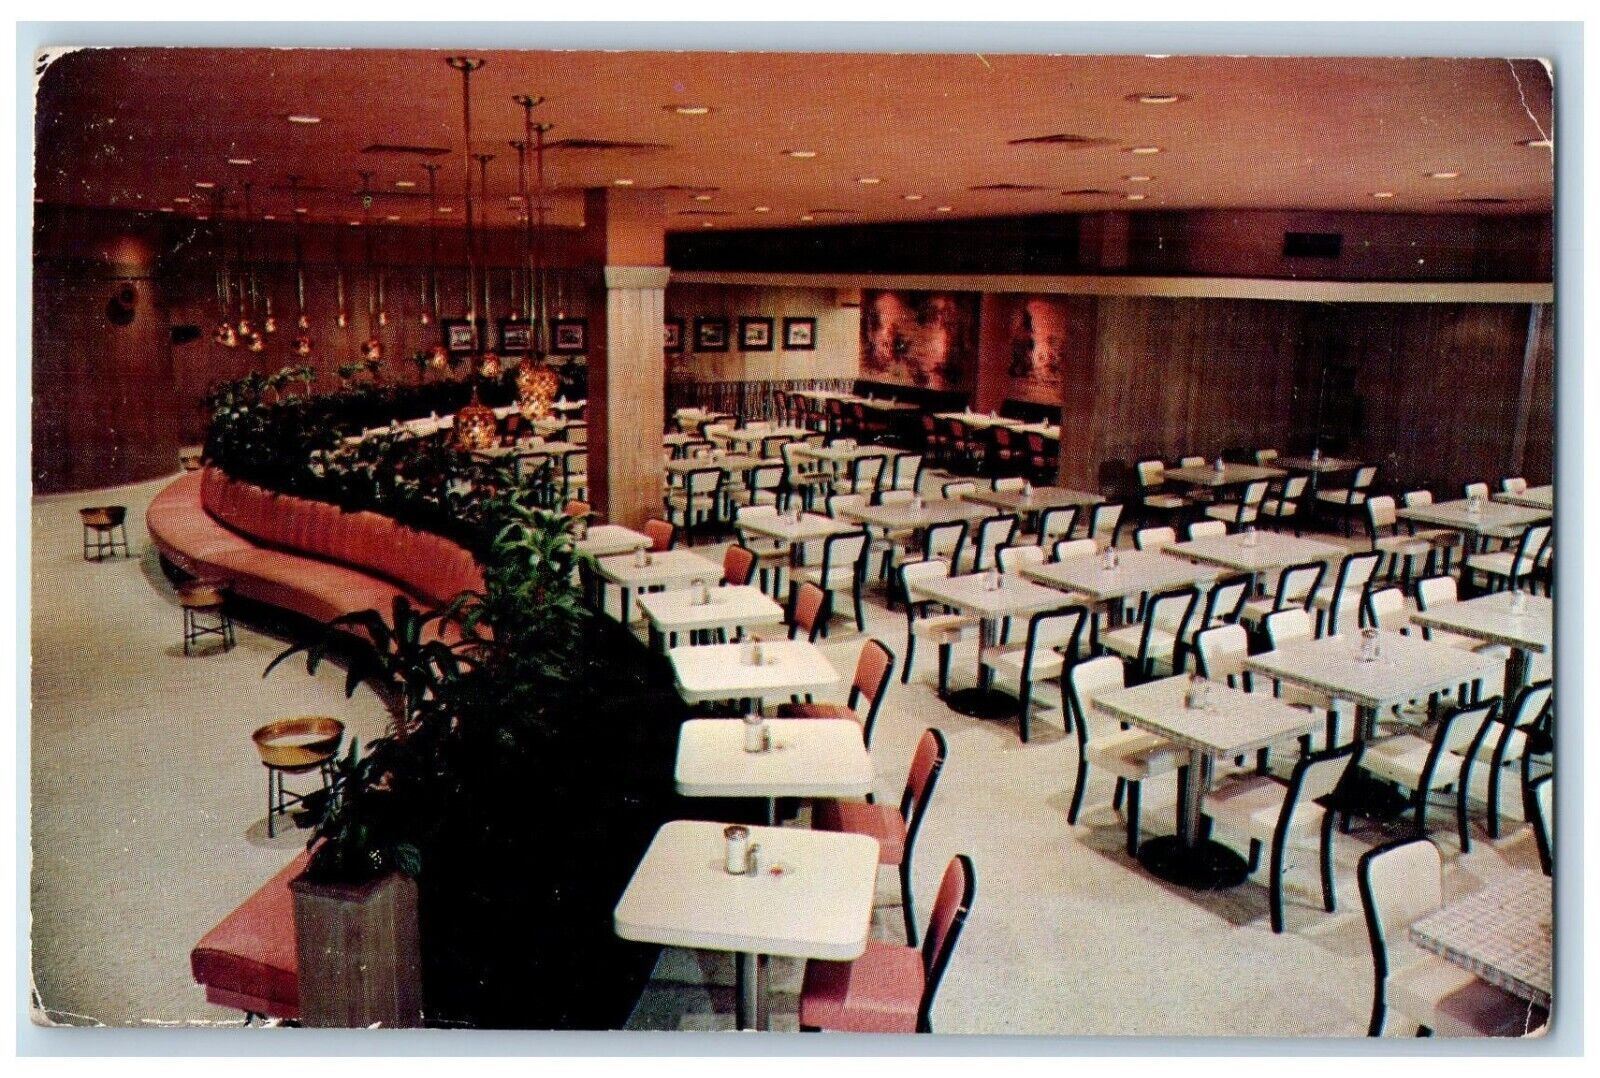 Kansas City MO, S-Shaped Sofa Dazzling Decor Putsch's Cafeteria Postcard